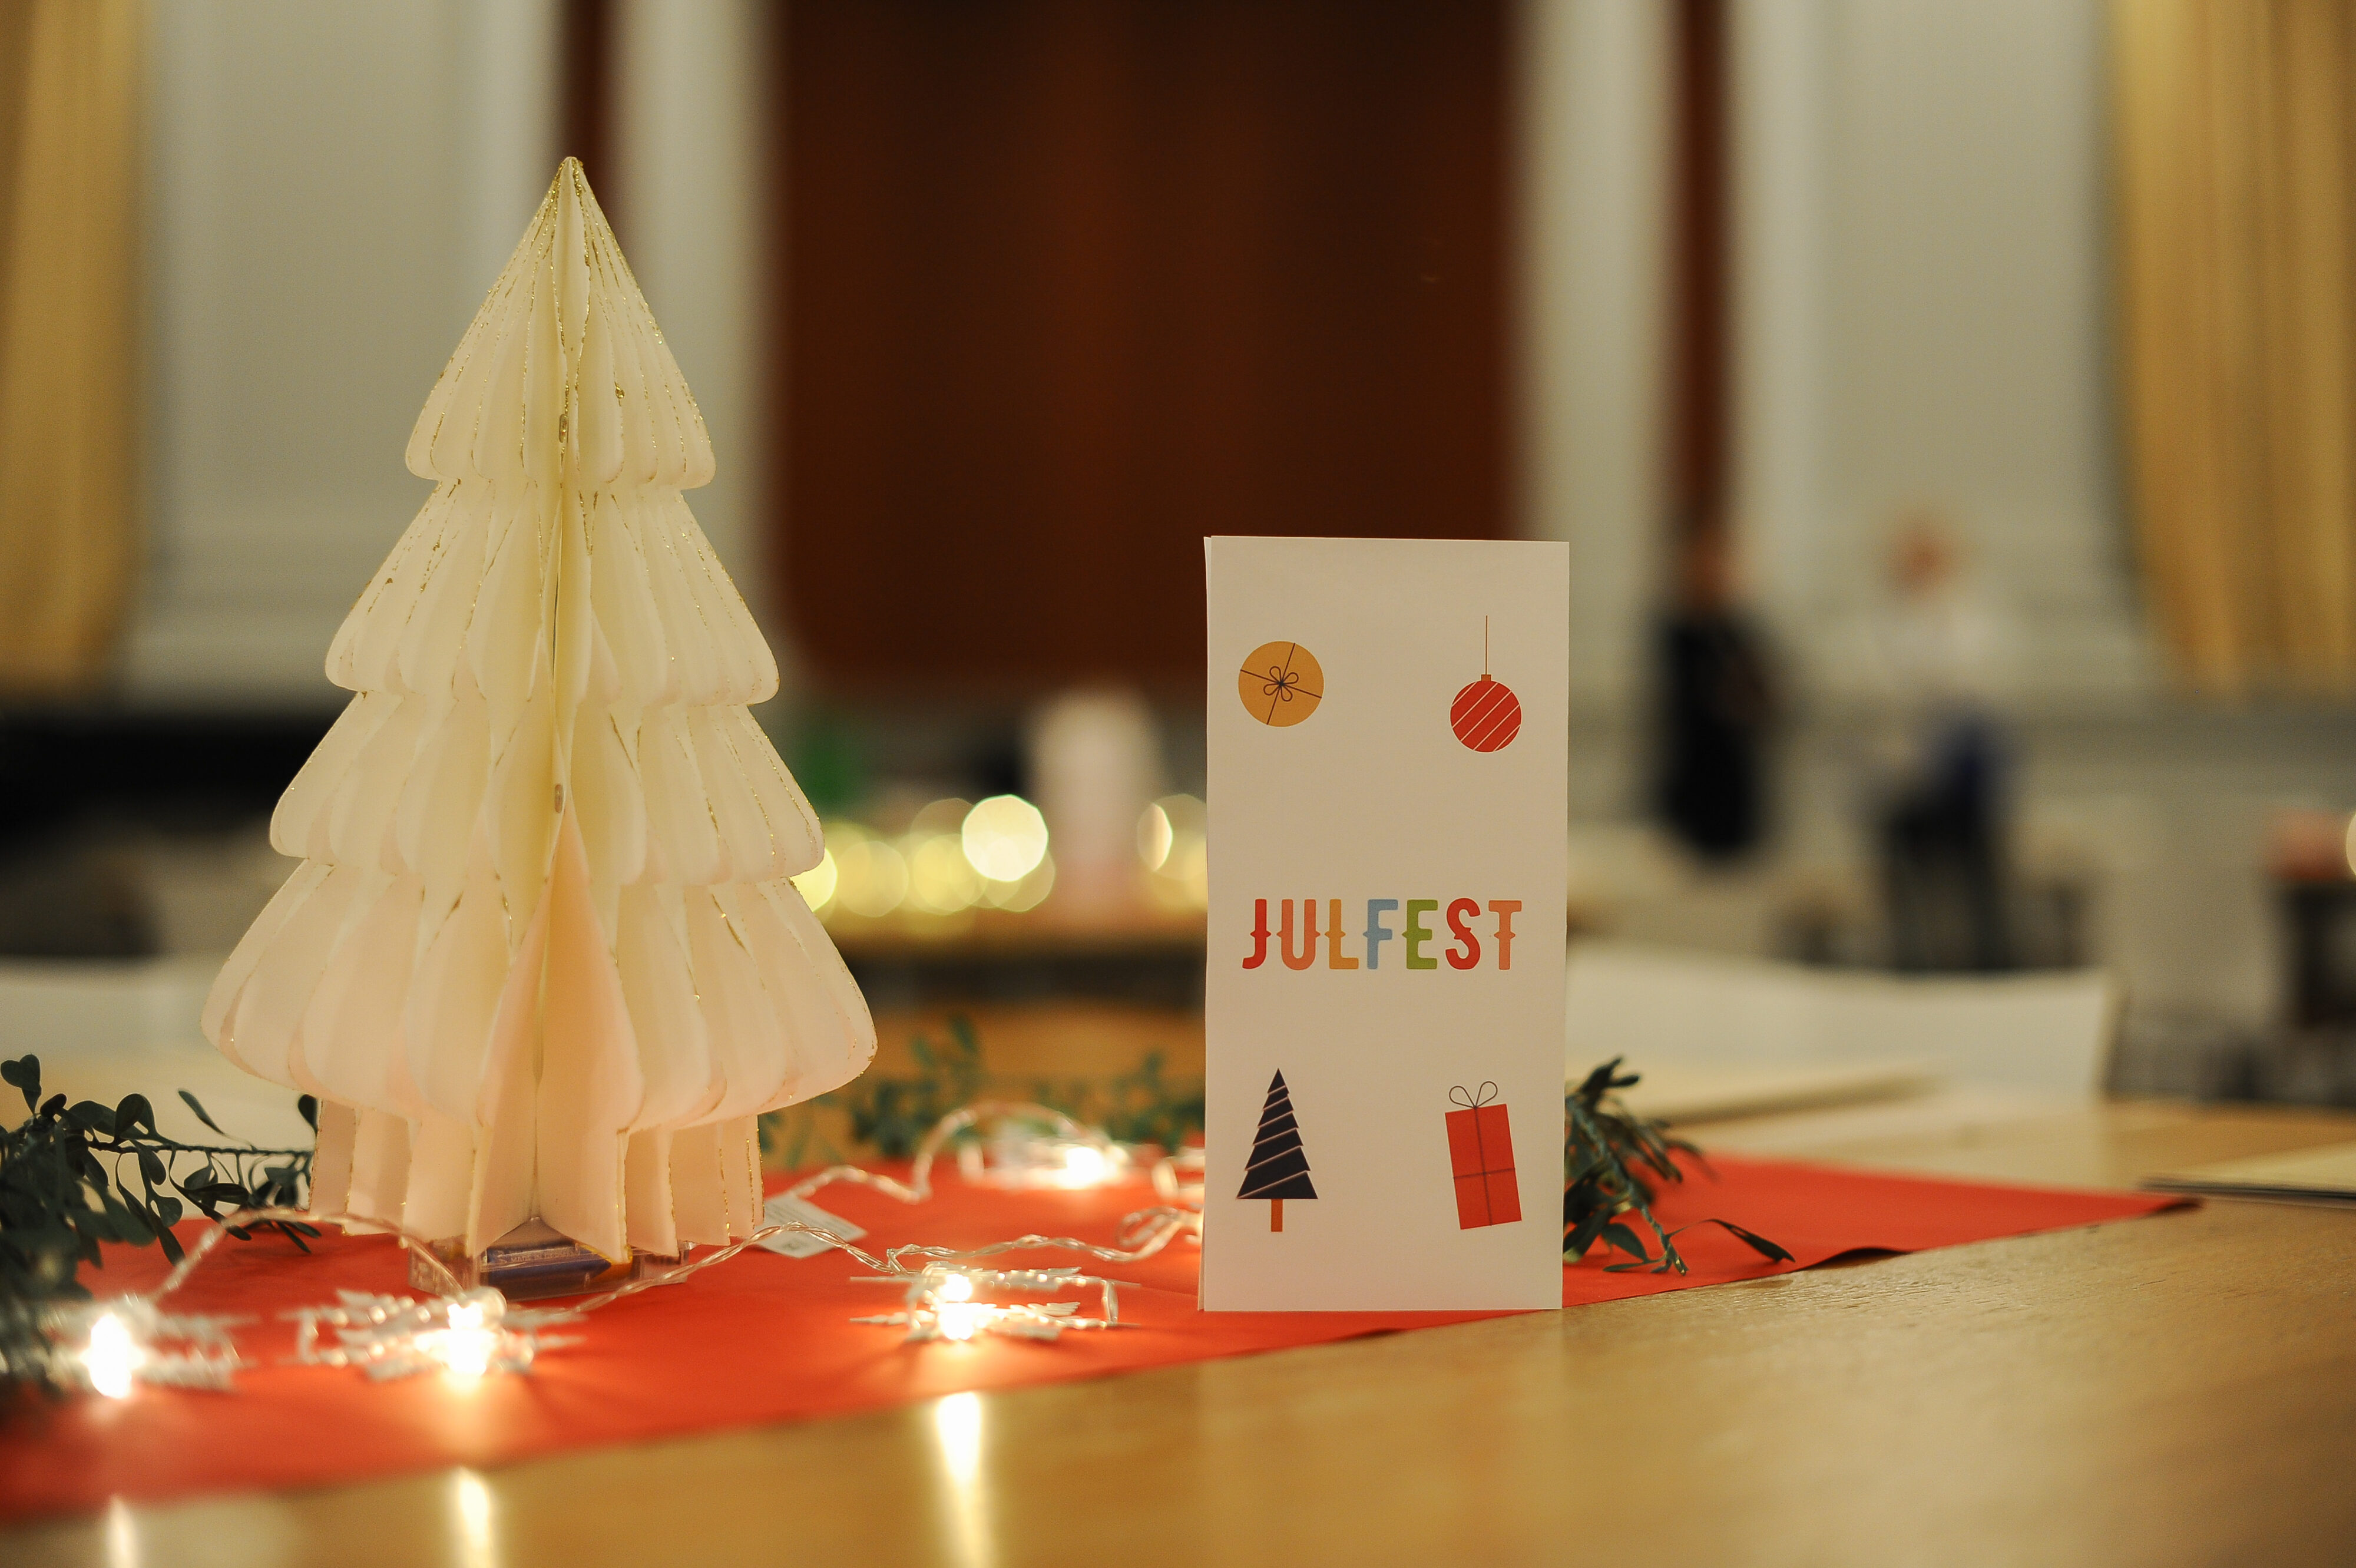 Ett bord fotat på nära håll, med en vit pappersgran och en broschyr med texten Julfest. En röd bordduk, en lysande ljusslinga och en grön girland.